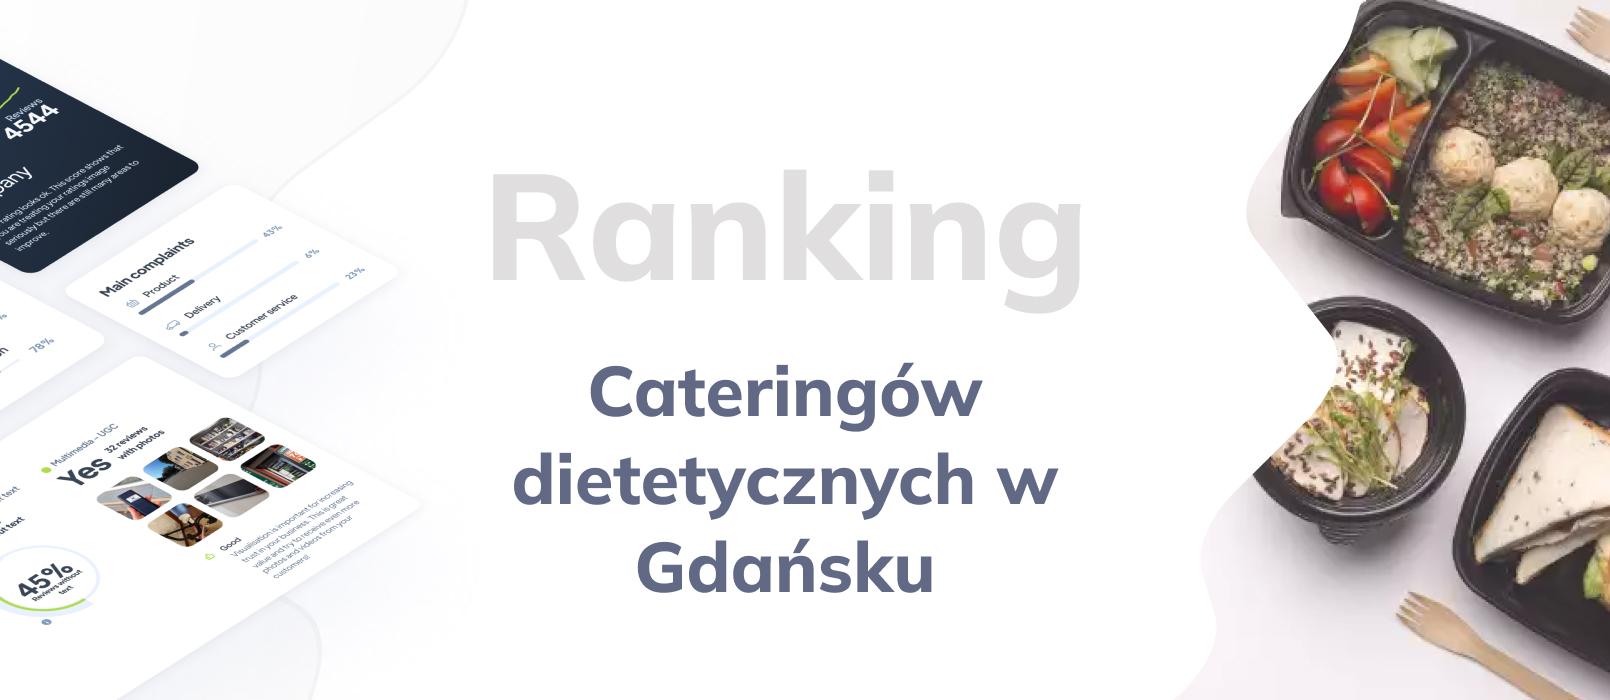 Cateringi dietetyczne w Gdańsku - ranking TOP 10 